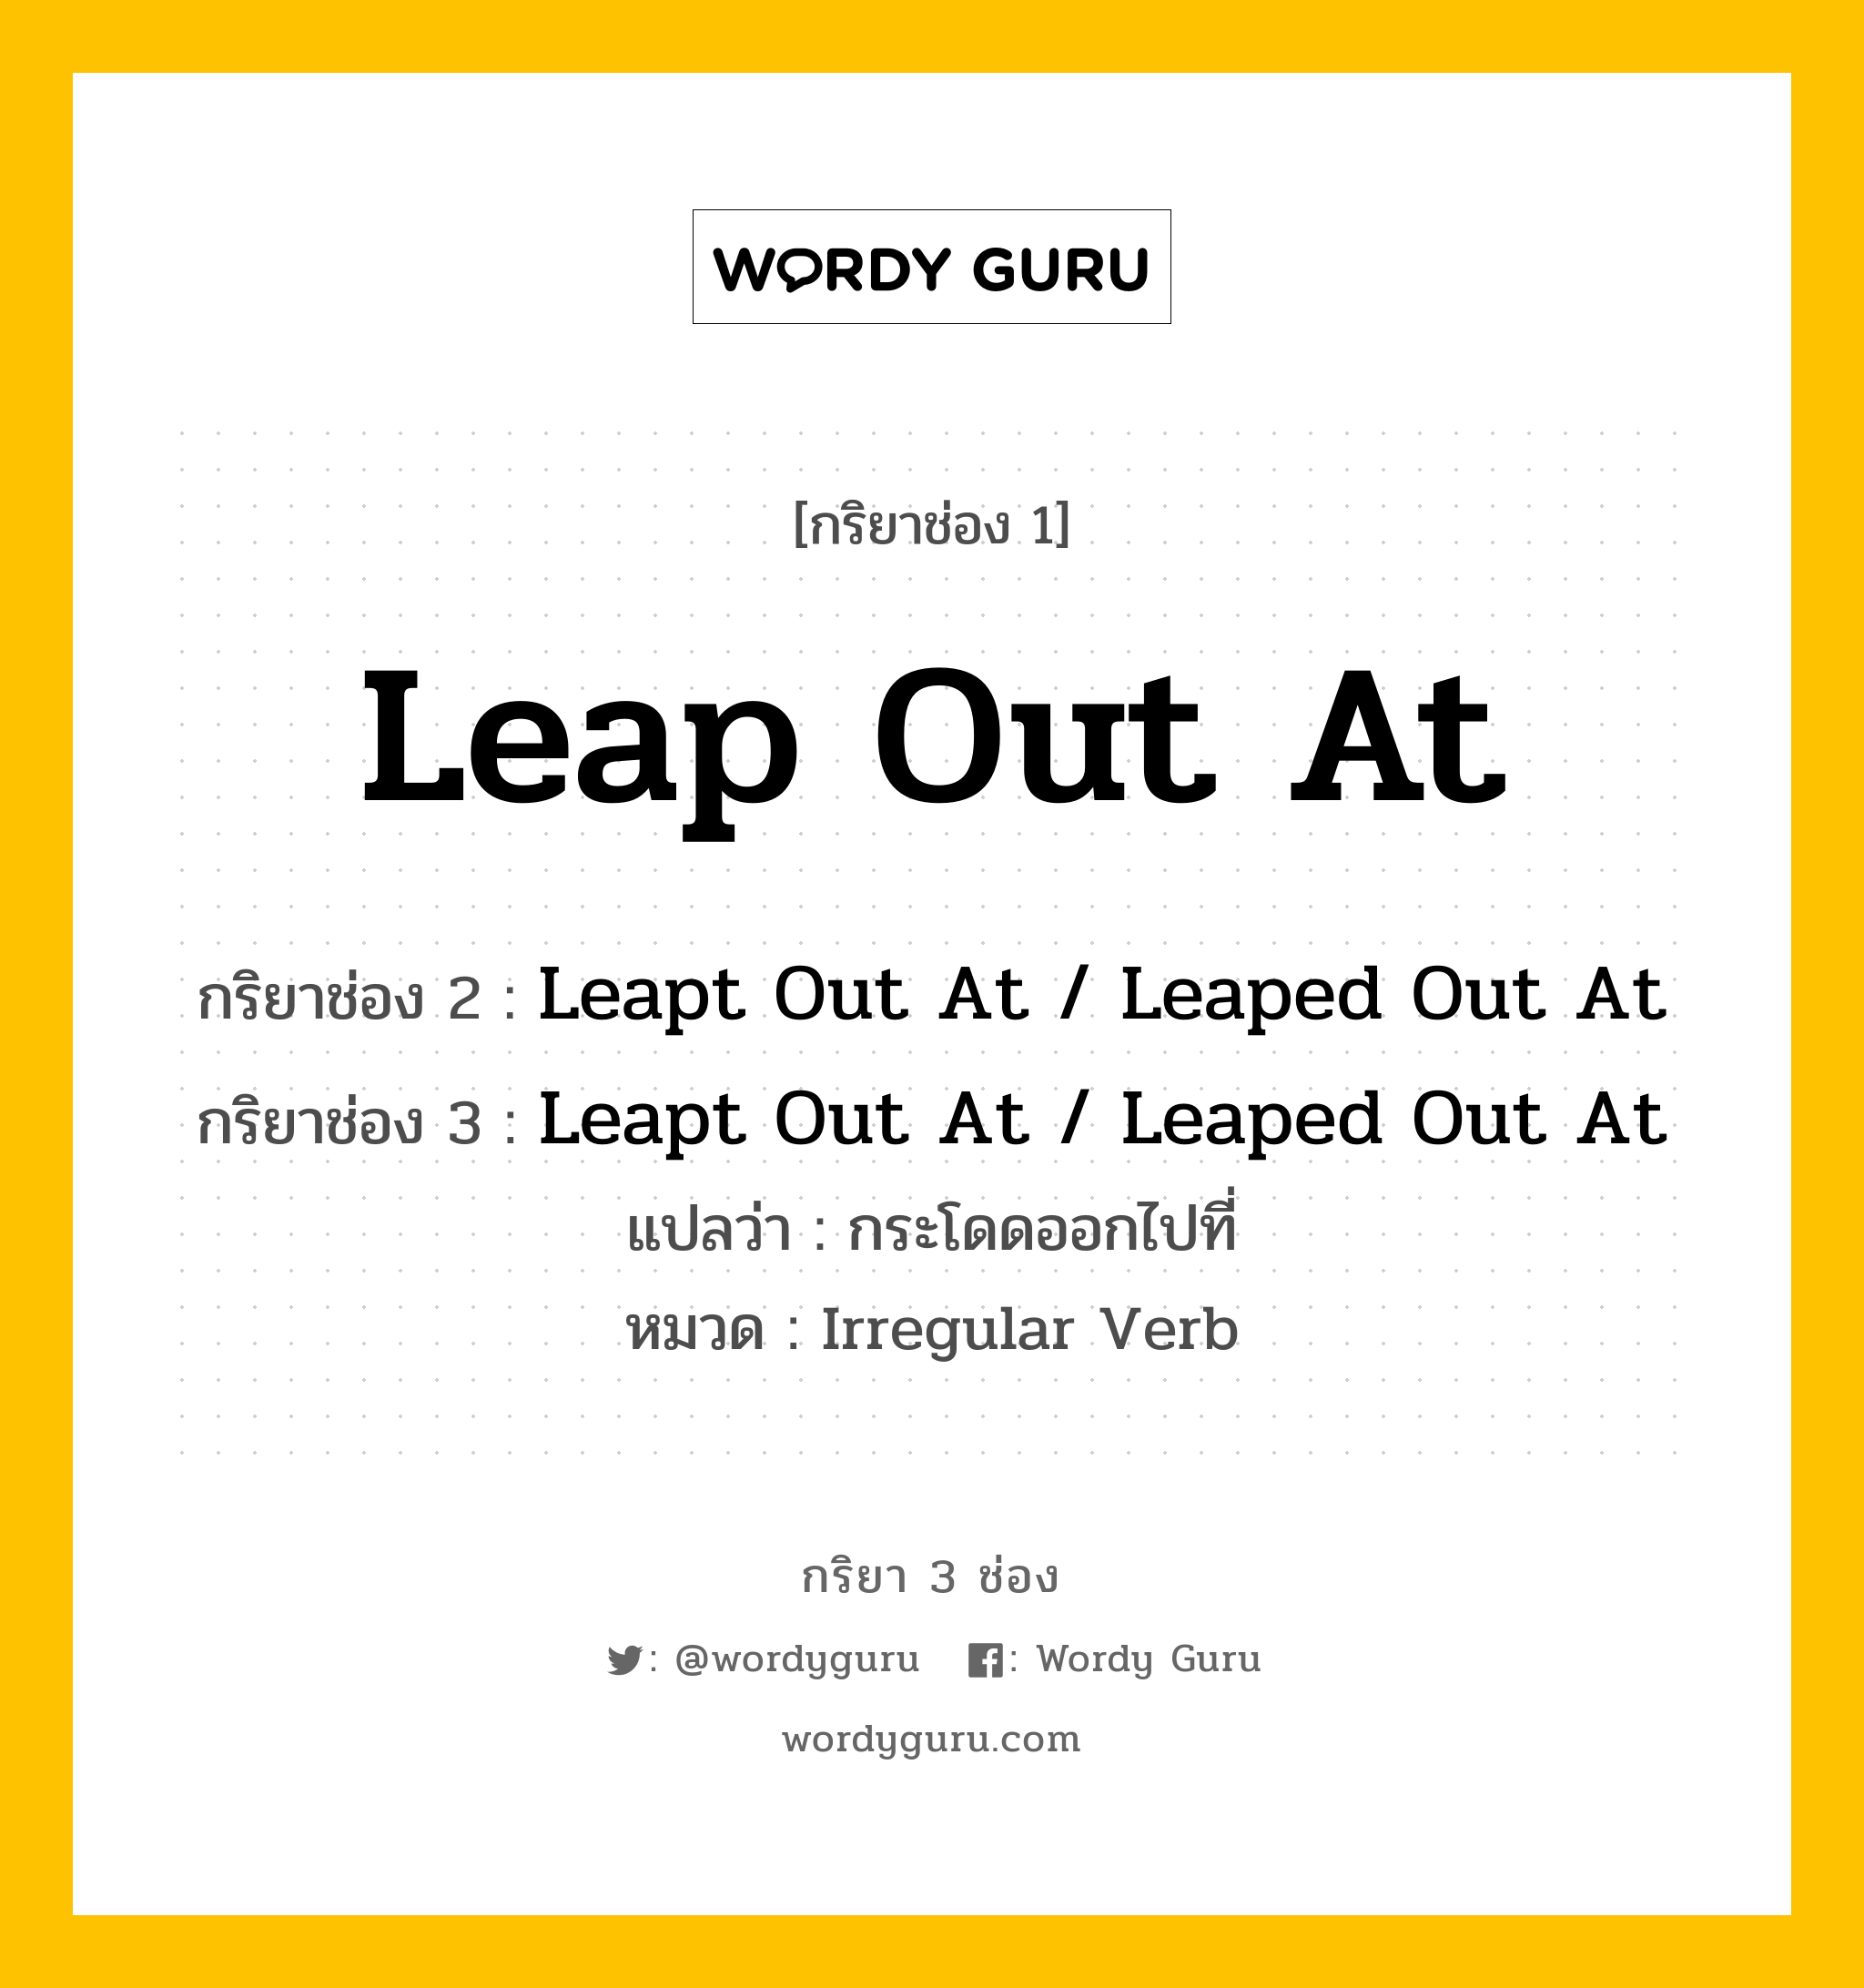 กริยา 3 ช่อง ของ Leap Out At คืออะไร? มาดูคำอ่าน คำแปลกันเลย, กริยาช่อง 1 Leap Out At กริยาช่อง 2 Leapt Out At / Leaped Out At กริยาช่อง 3 Leapt Out At / Leaped Out At แปลว่า กระโดดออกไปที่ หมวด Irregular Verb หมวด Irregular Verb